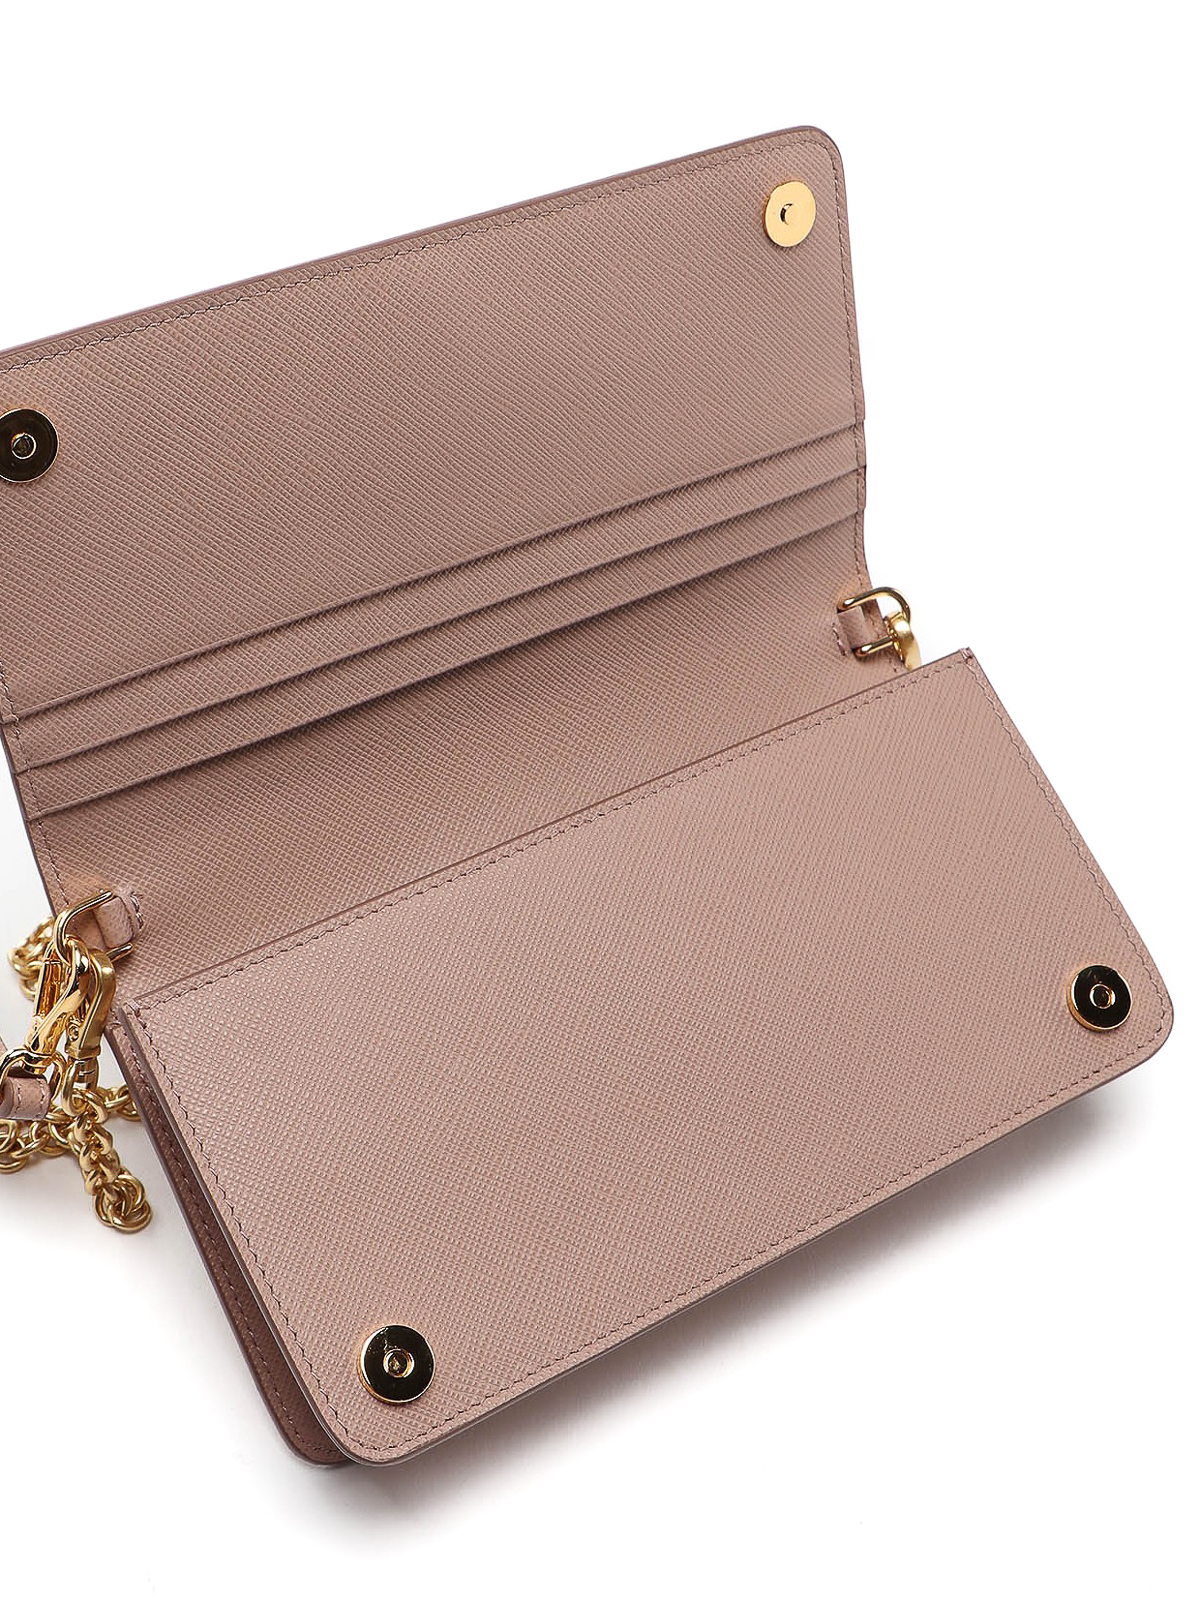 Prada - Saffiano Leather Wallet On Chain Cipria